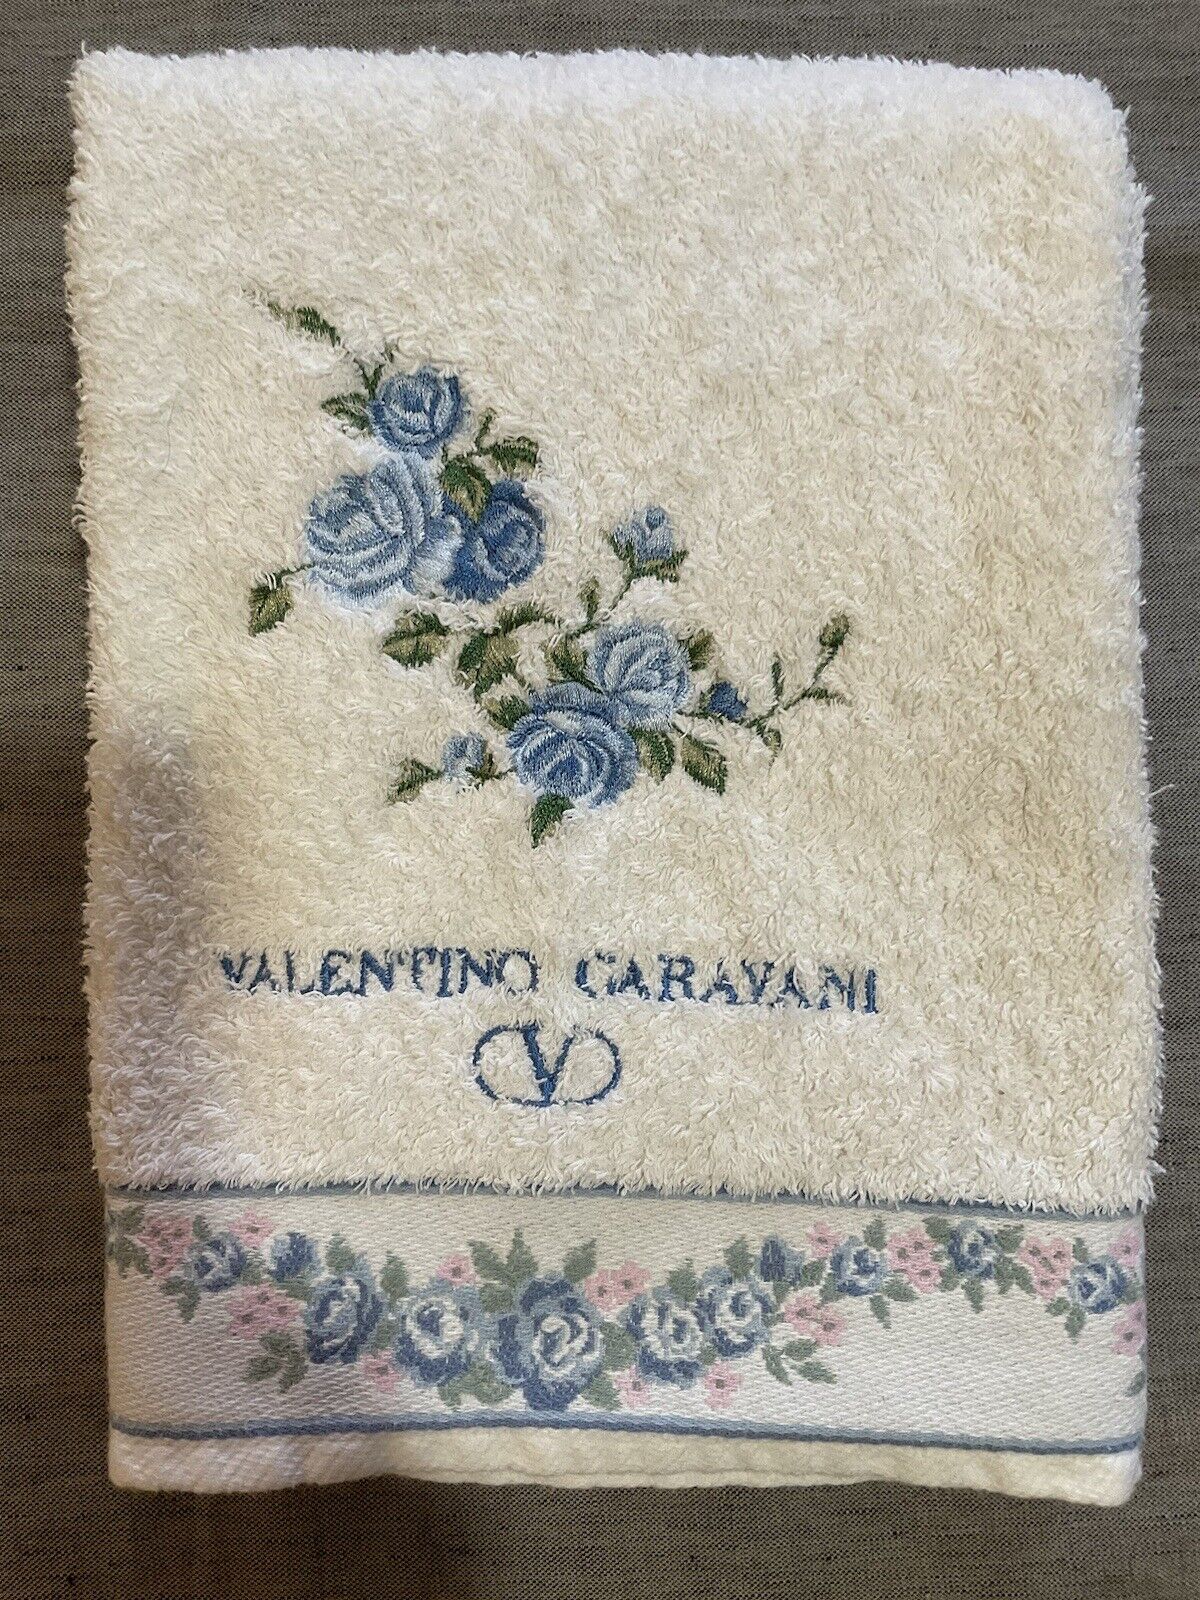 VTG Valentino Garavani Maison White/Blue Floral Embroidered Bath Towel 47”x 24”